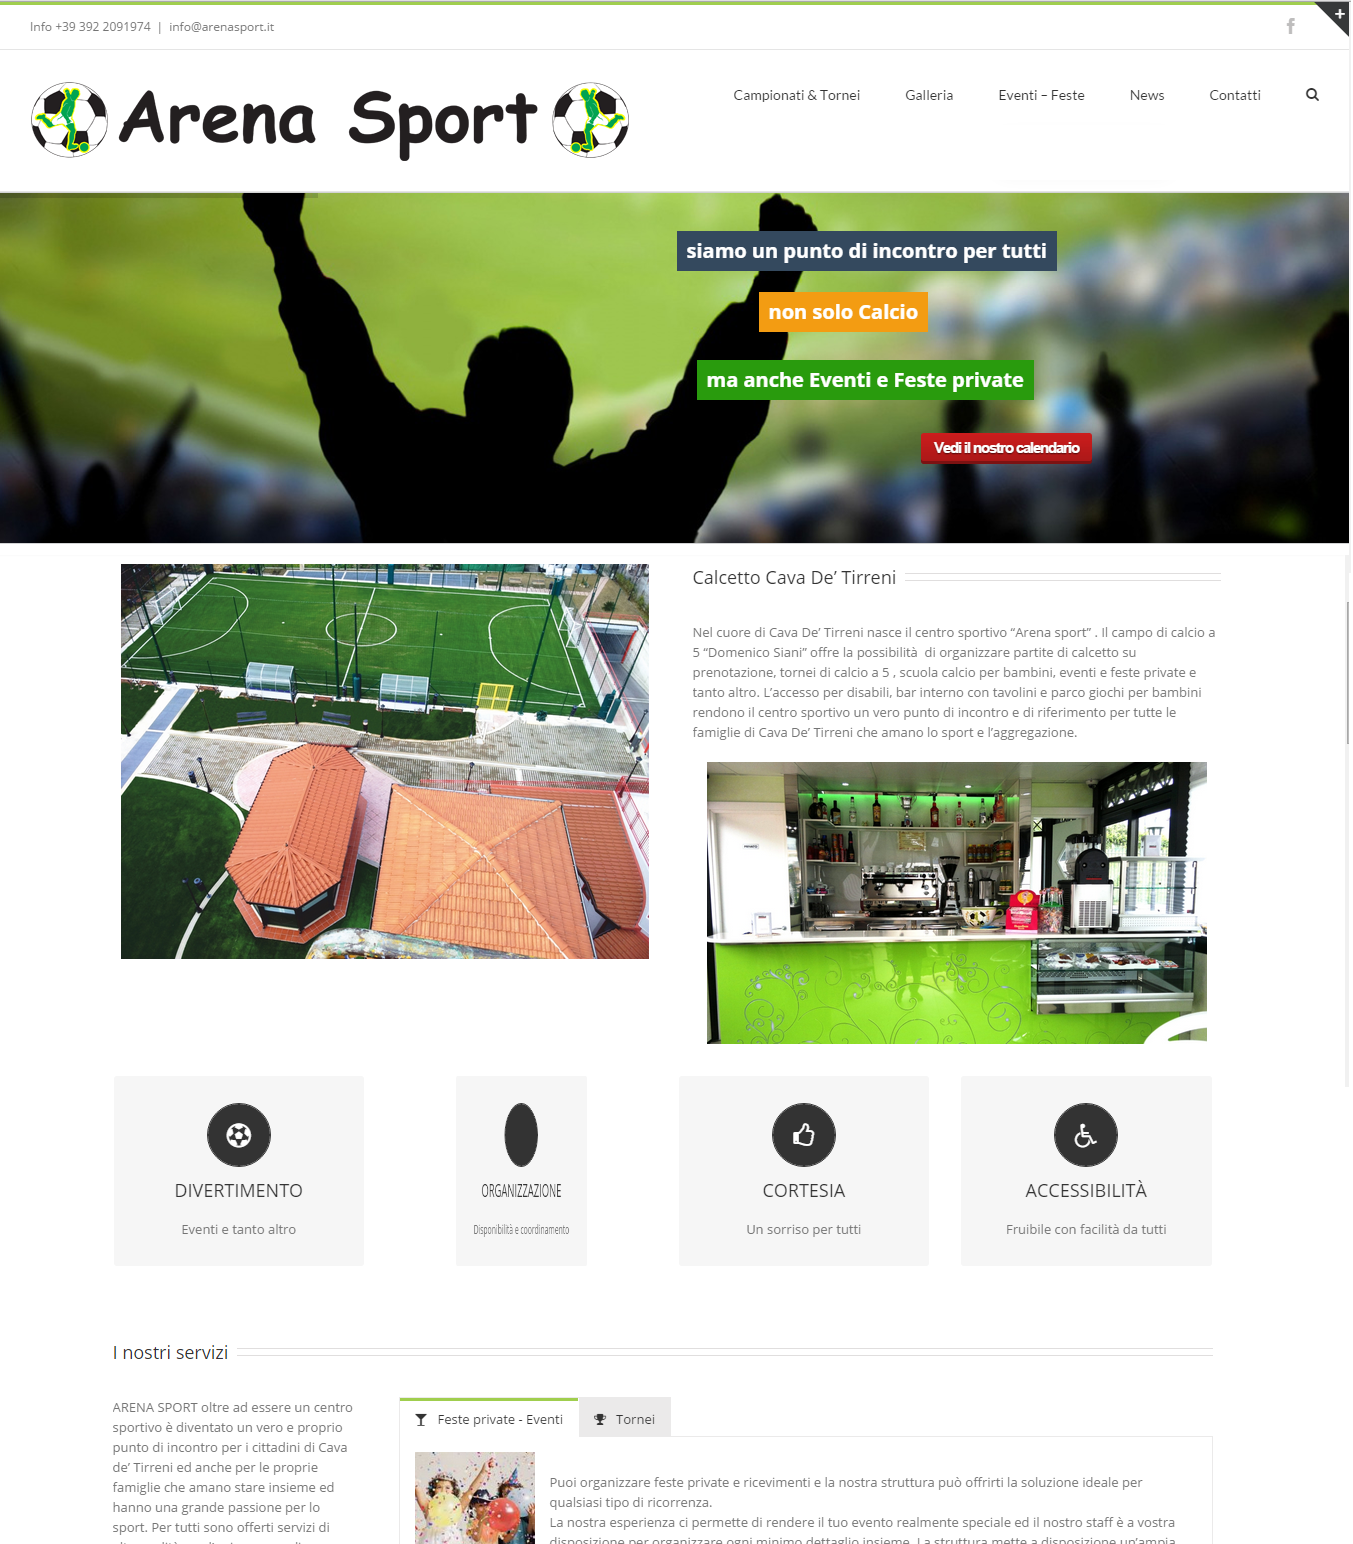 Per Arena Sport è stato realizzato un sito web di presentazione delle strutture sportive e per gestione dei campionati e tornei di calcio a 5 e calcio balilla giocati.